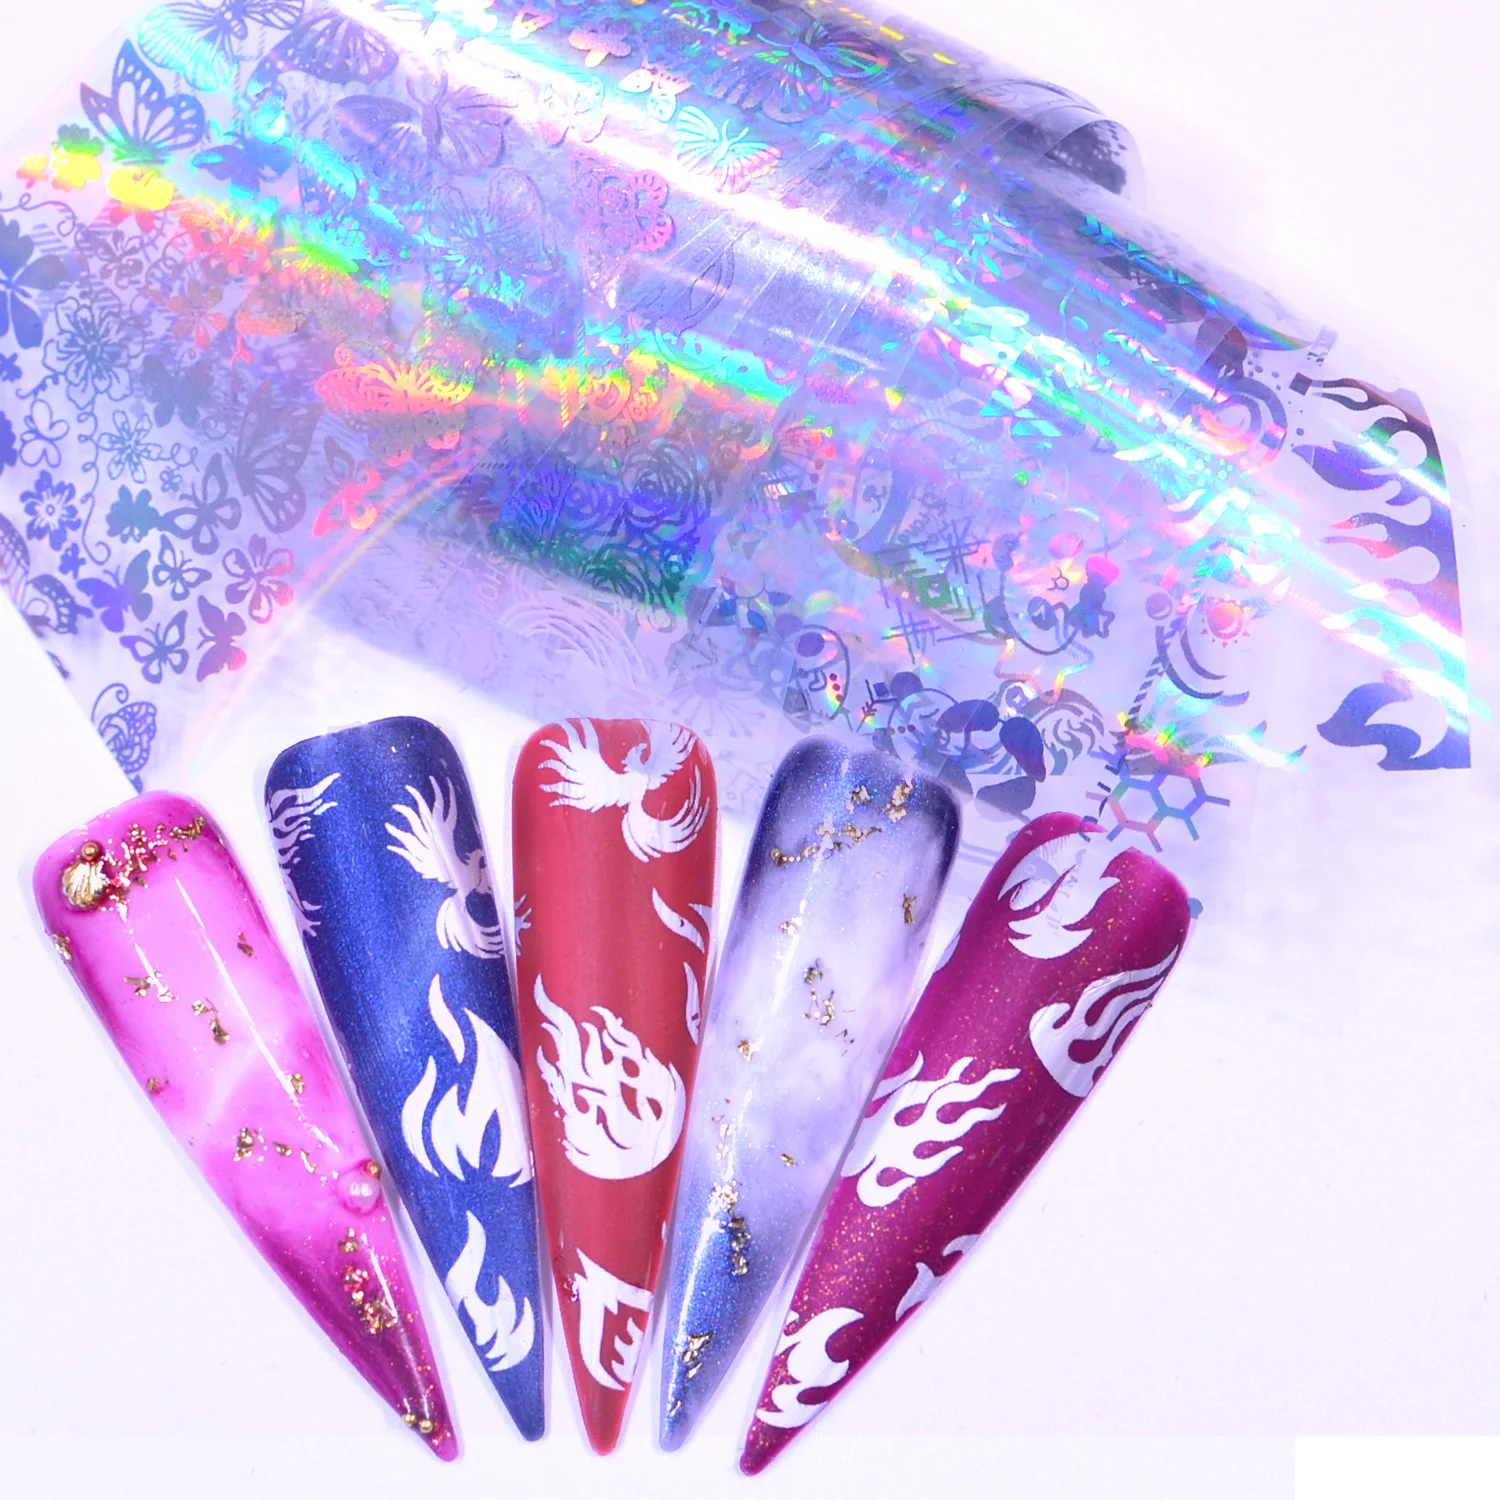 YZWLE 3D украшения для ногтей пламя наклейки для ногтей Фольга бабочка/цветы/пламя конструкции водяные наклейки для ногтей искусство наклейки s обертывания